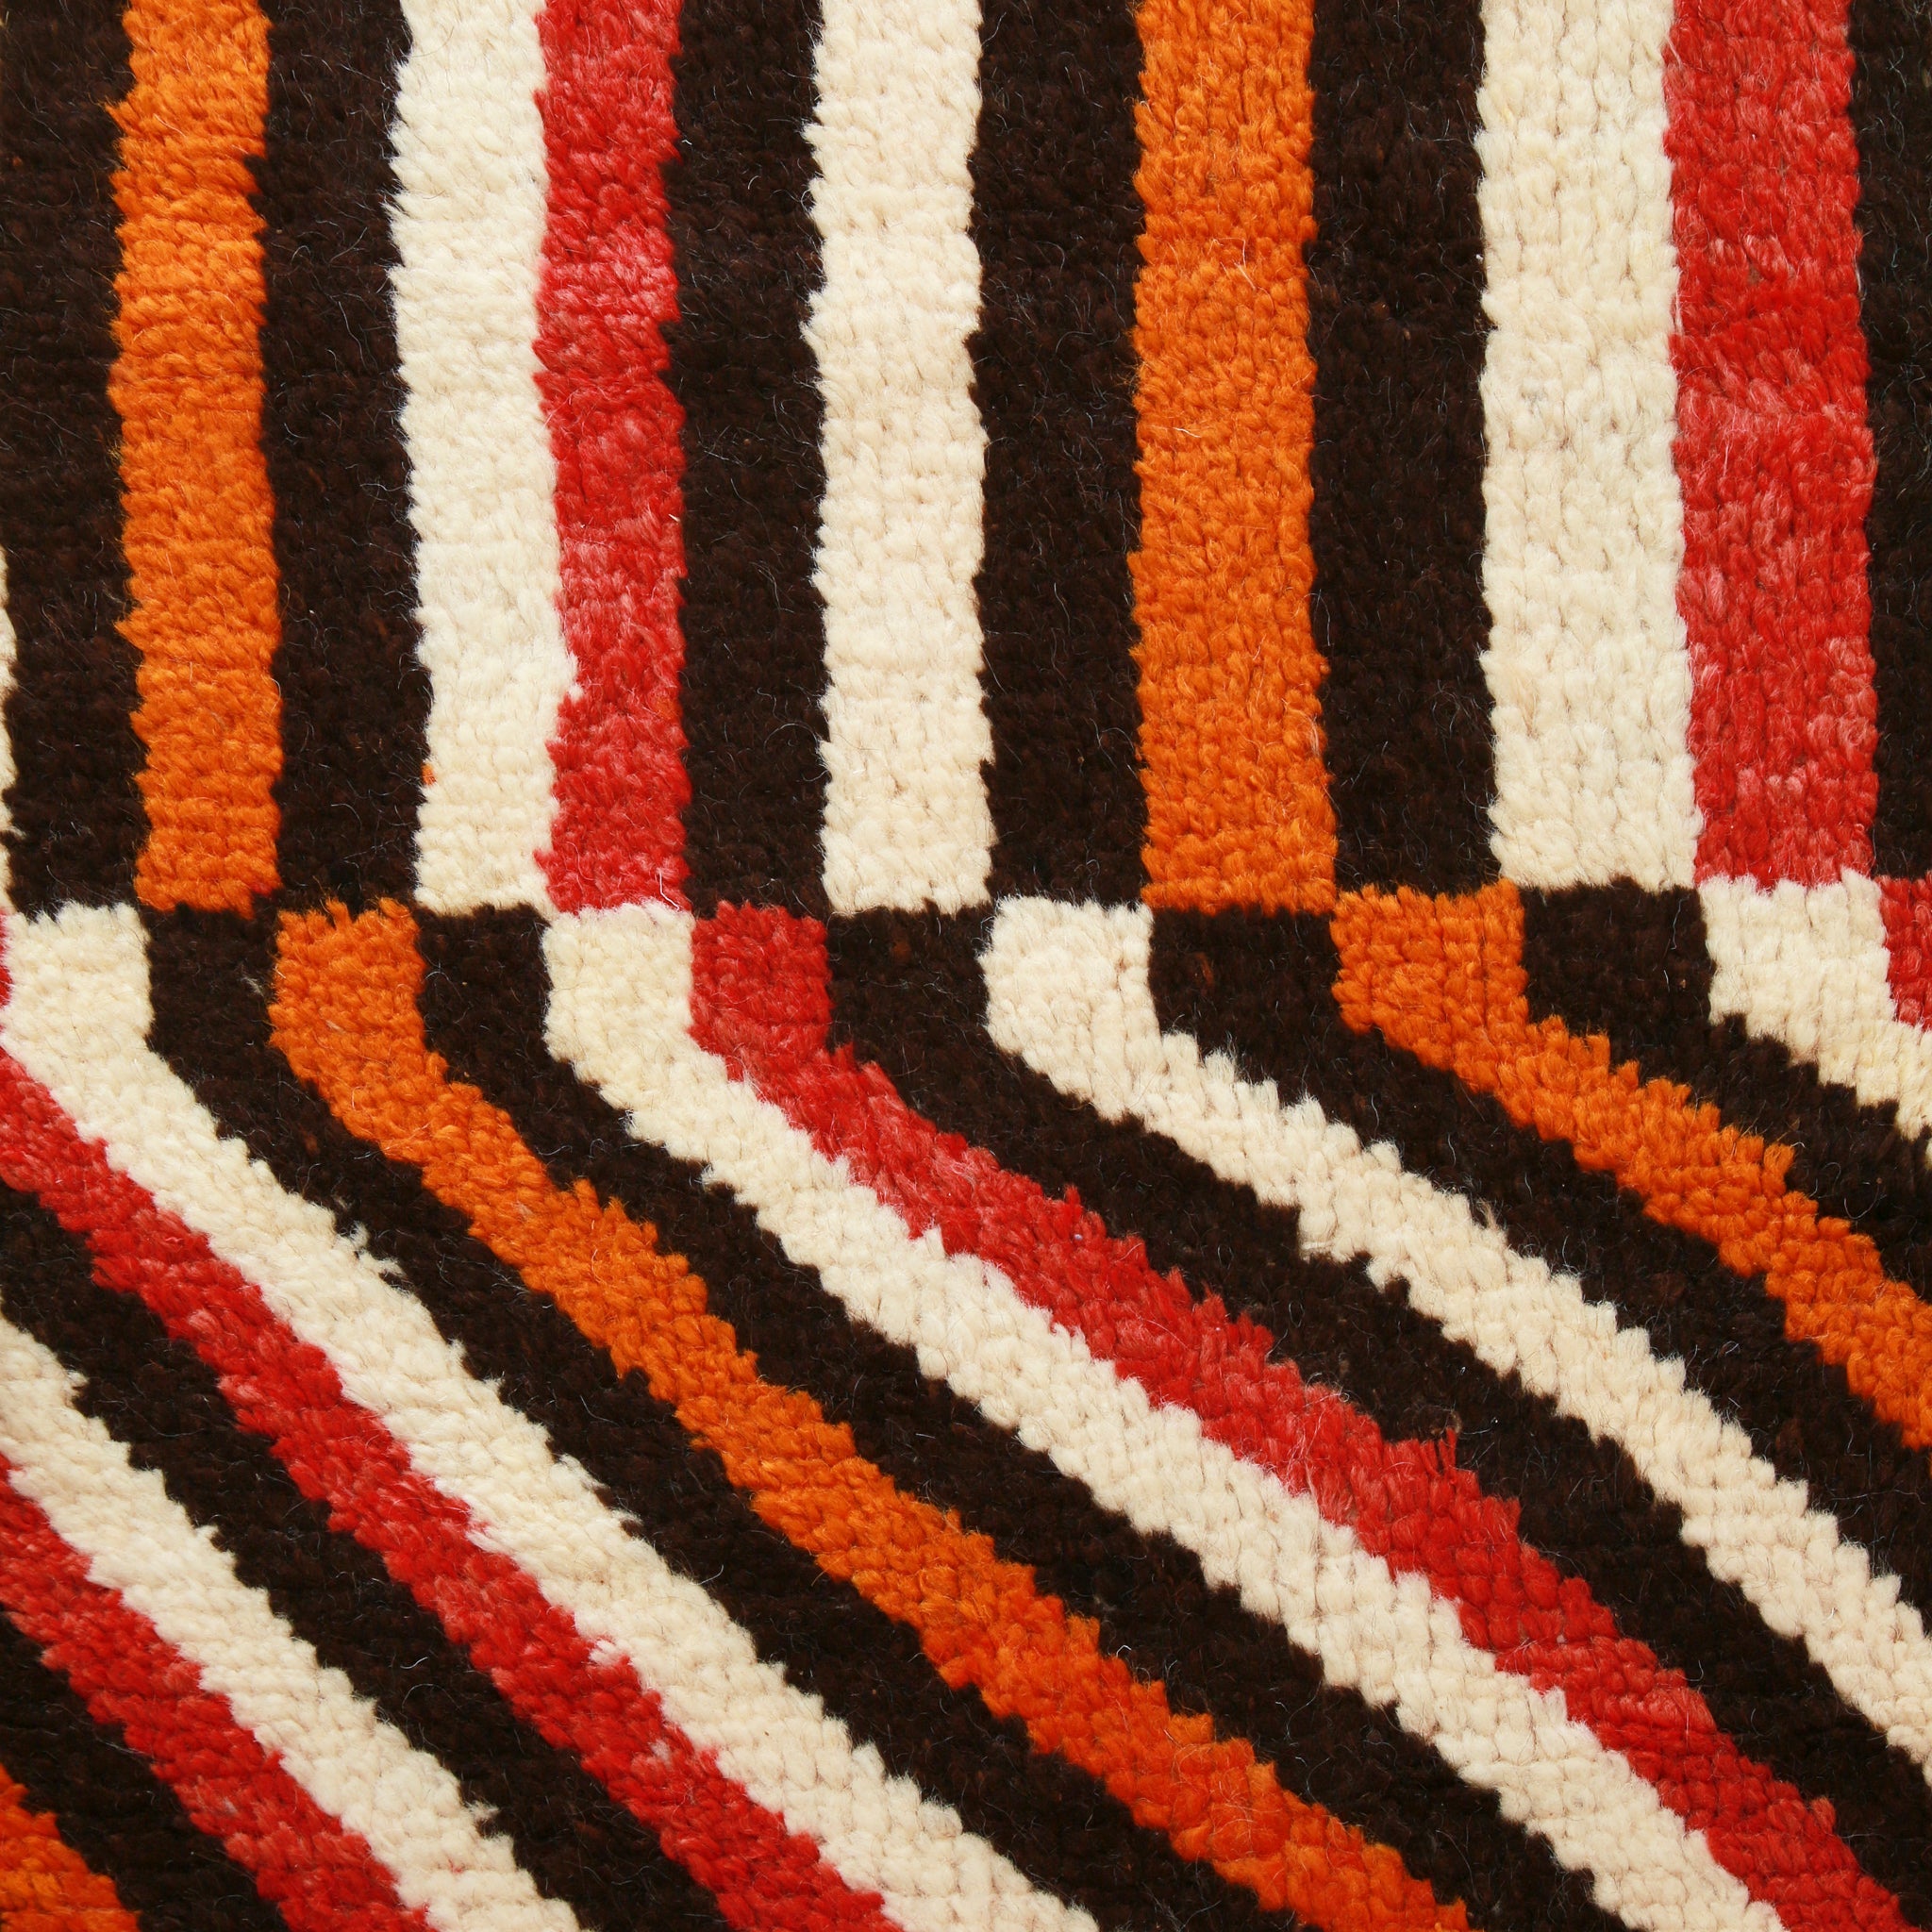 dettaglio didi un tappeto stile azilal che mette in risalto la precisa tessitura che crea precise forme gemotriche  rettangoli di diversi colori